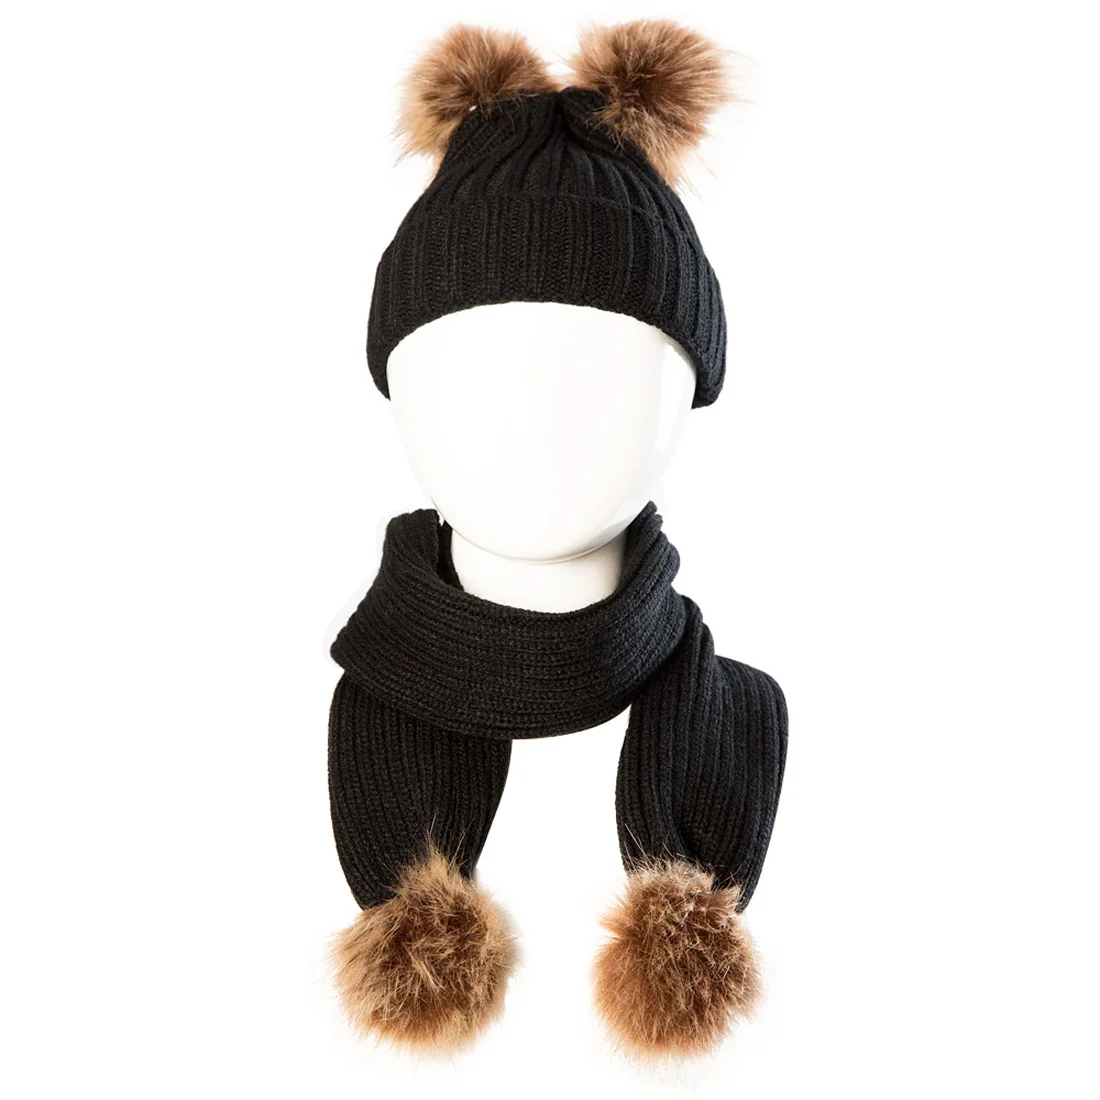 Itfabs/Новые поступления, модная распродажа, милые детские теплые зимние шарф, вязаная шапка бини, вязаный крючком комплект, детский однотонный меховой шарф с помпонами